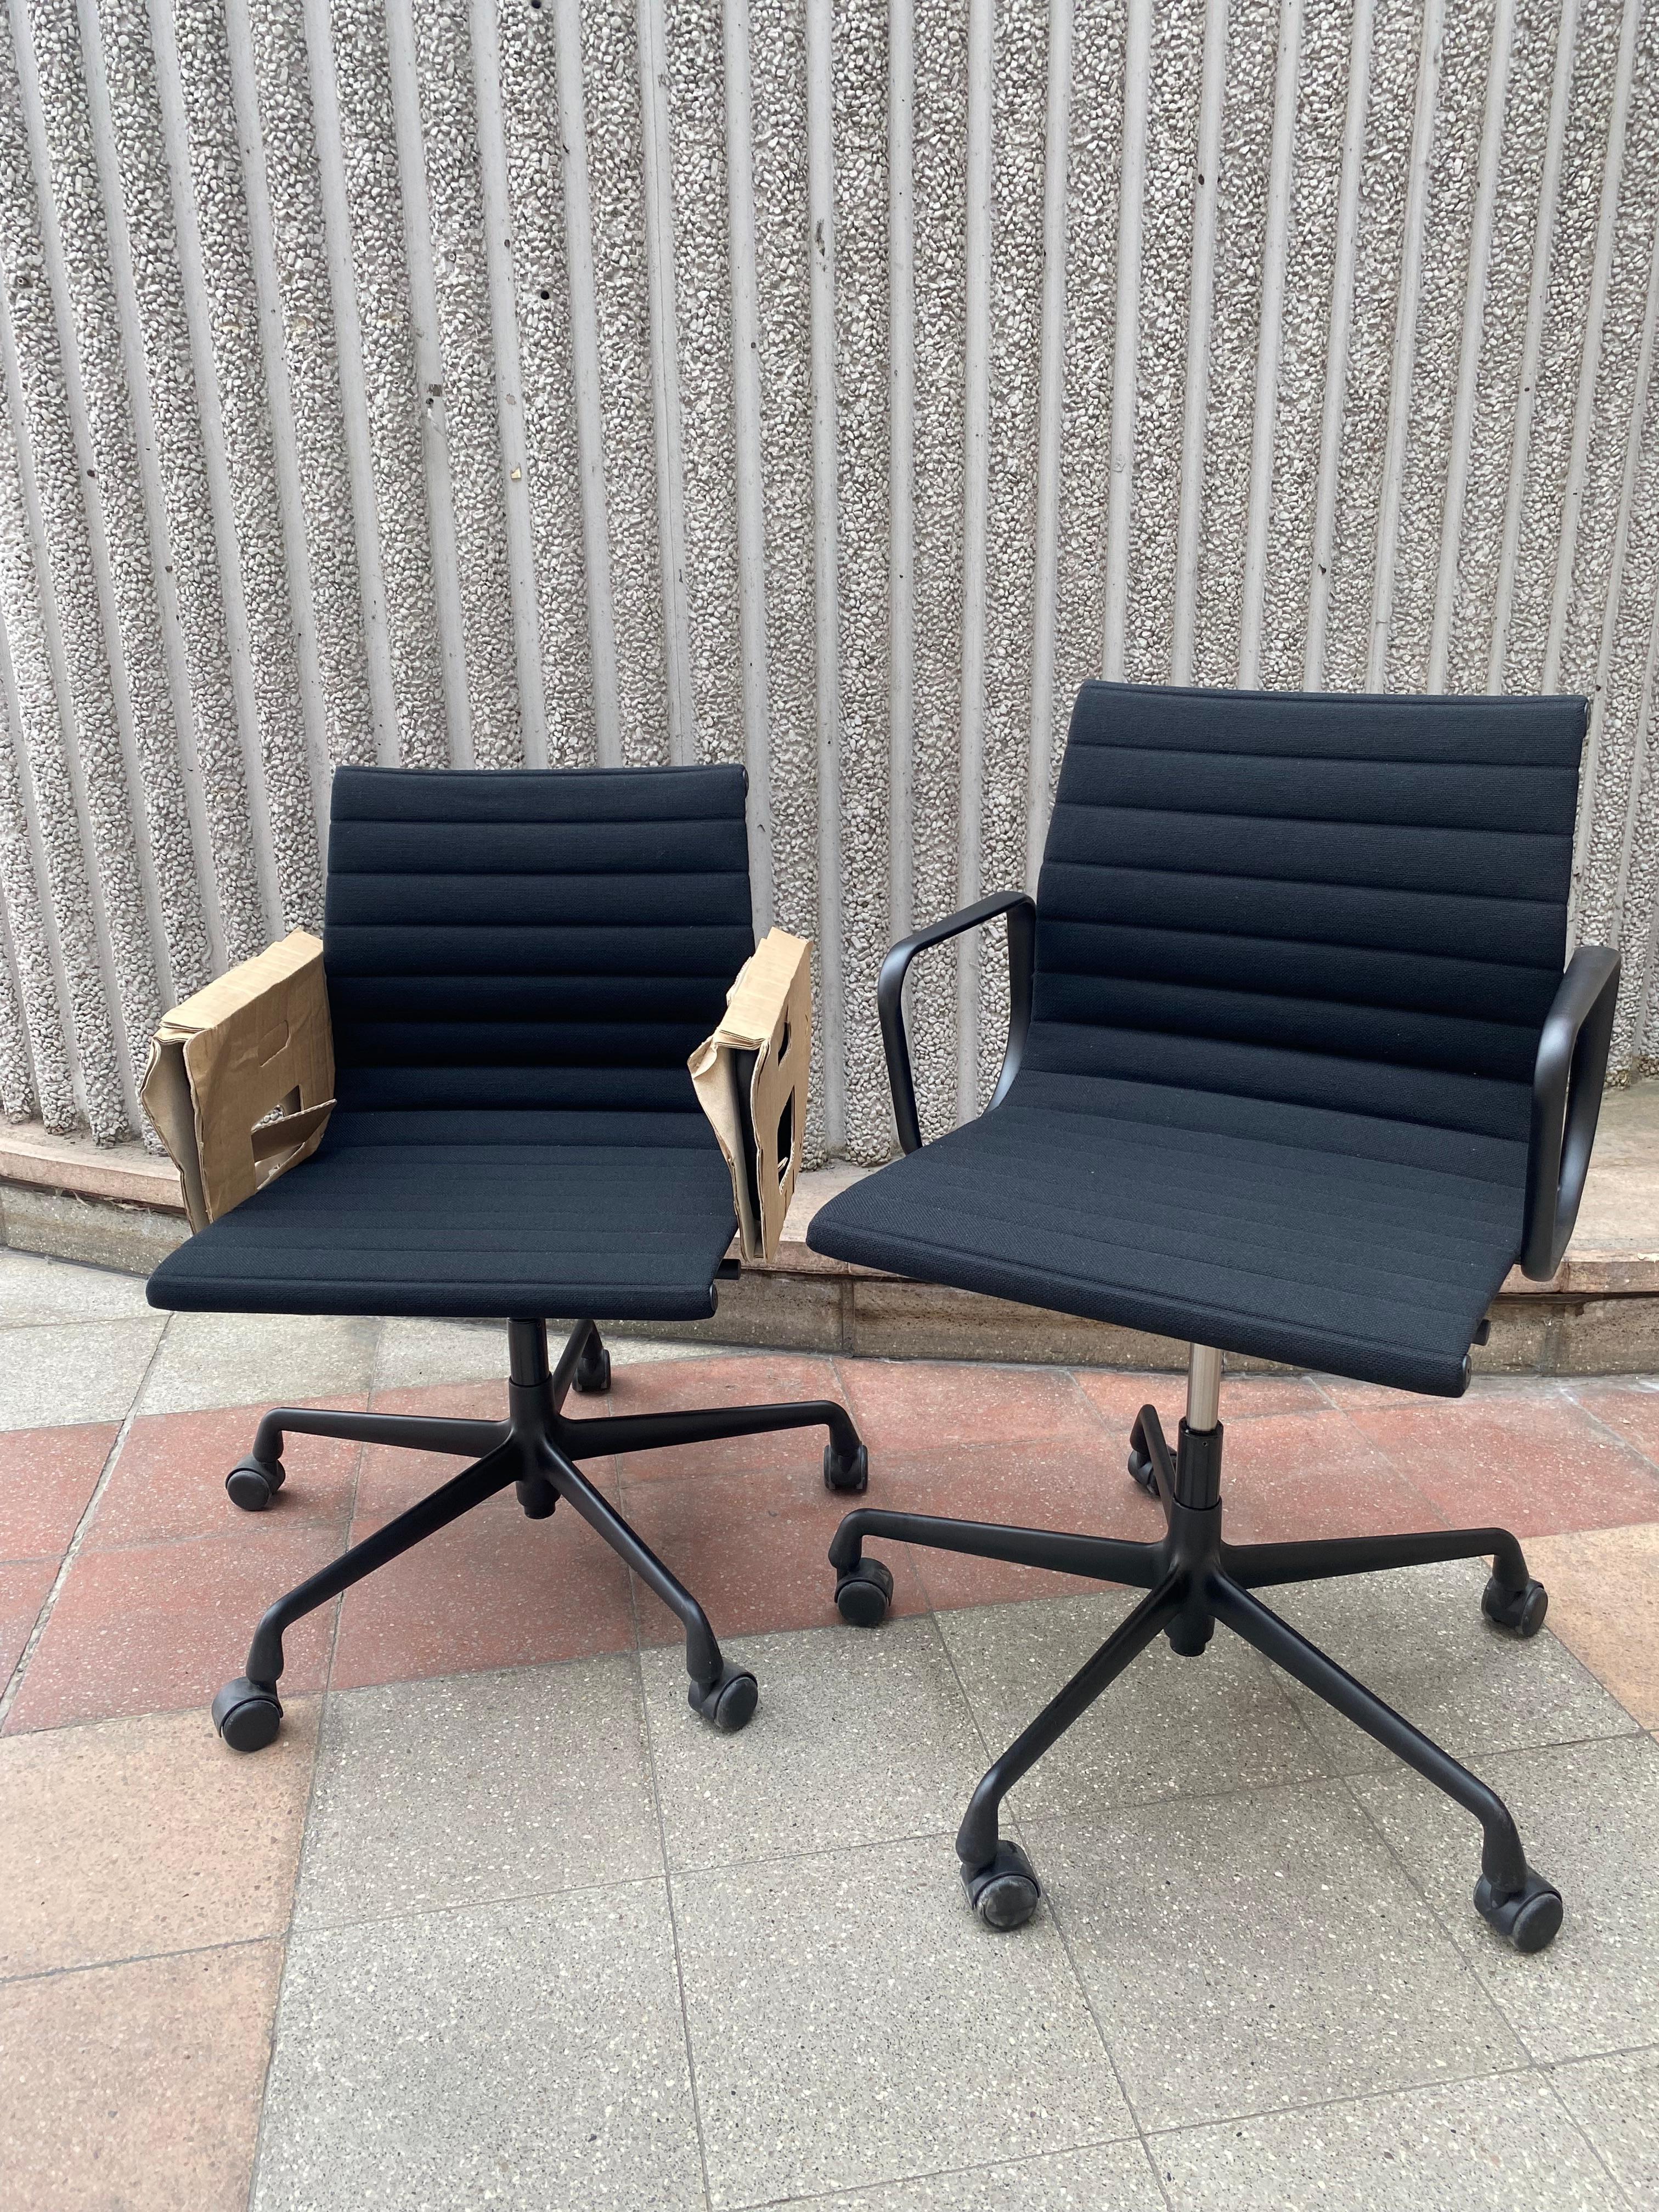 Ein Paar Charles Eames EA118 Sessel
Fleisch Aluminium
Neu
Vitra Edition Signiert mit ihrem Original Label
Schwarzes Aluminium und Stoff
Version auf Rädern und verstellbar
L 55 x T 75 x H 83